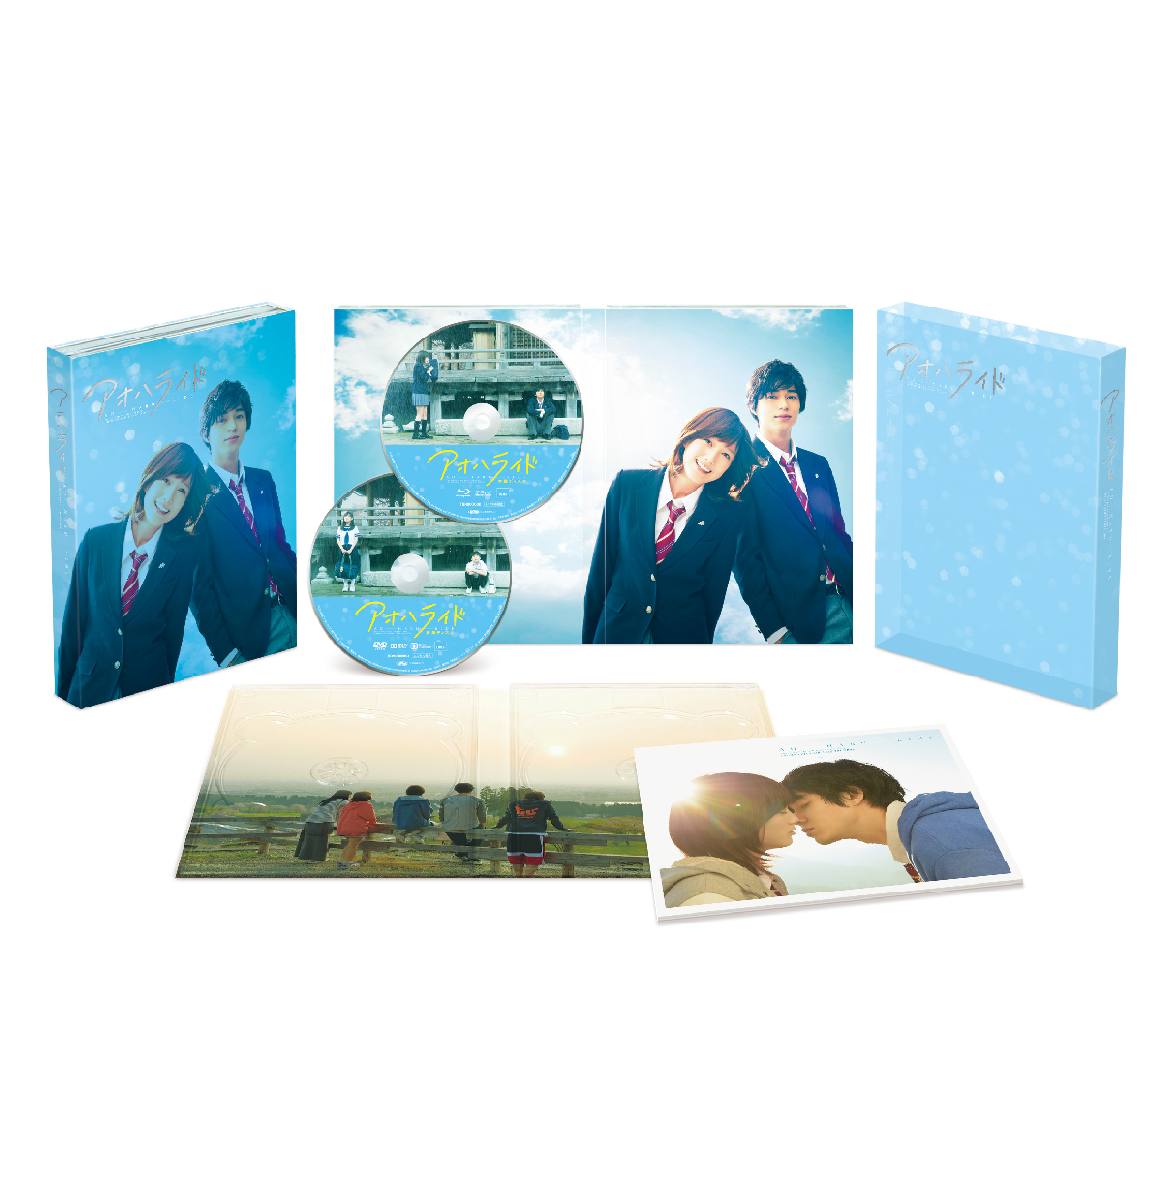 楽天ブックス: アオハライド Blu-ray豪華版【Blu-ray】 - 三木孝浩